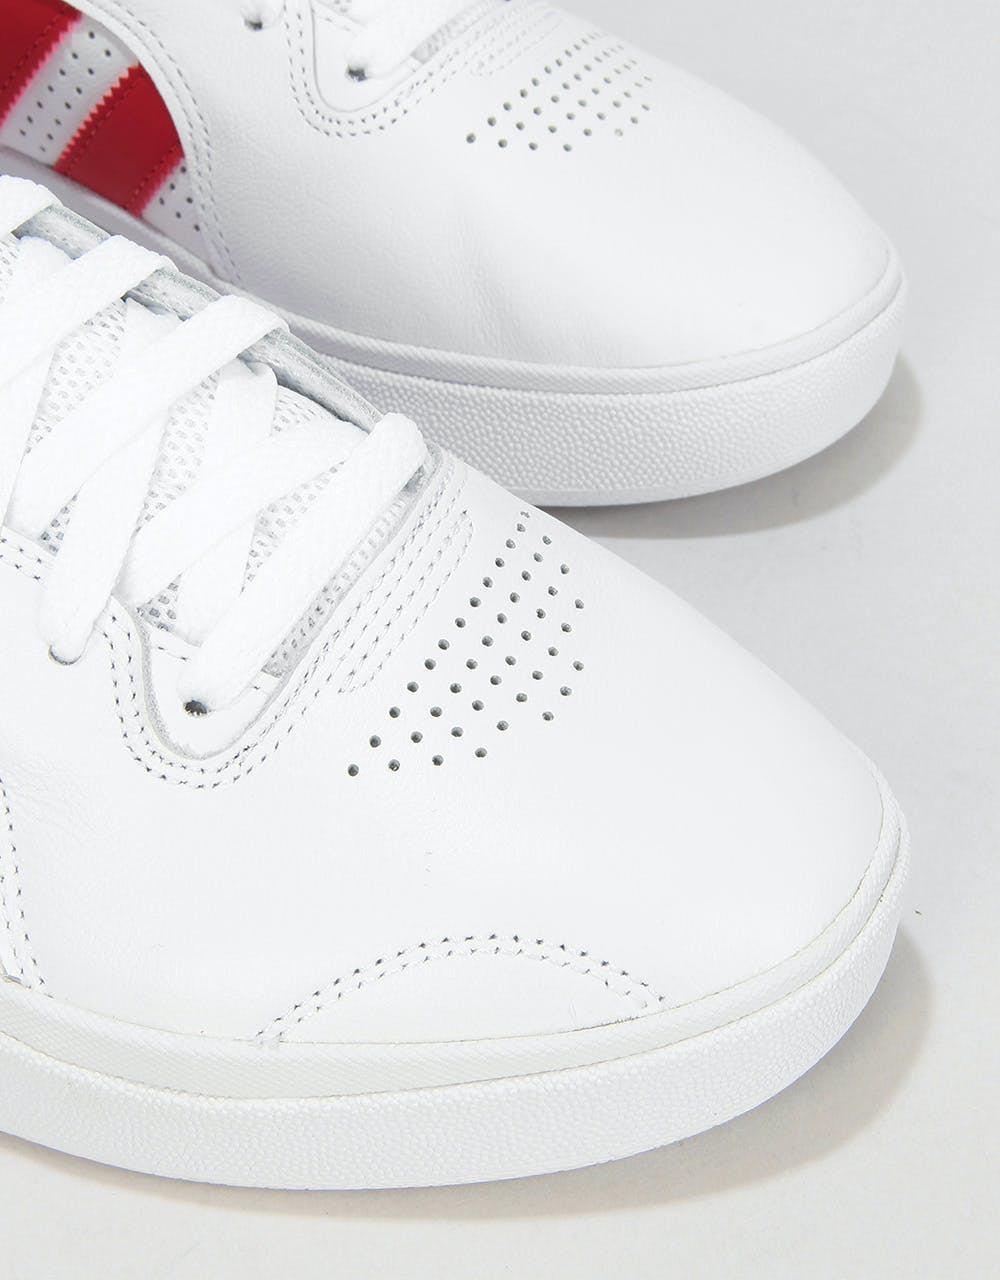 Adidas Tyshawn Skate Shoes - White/Scarlet/White